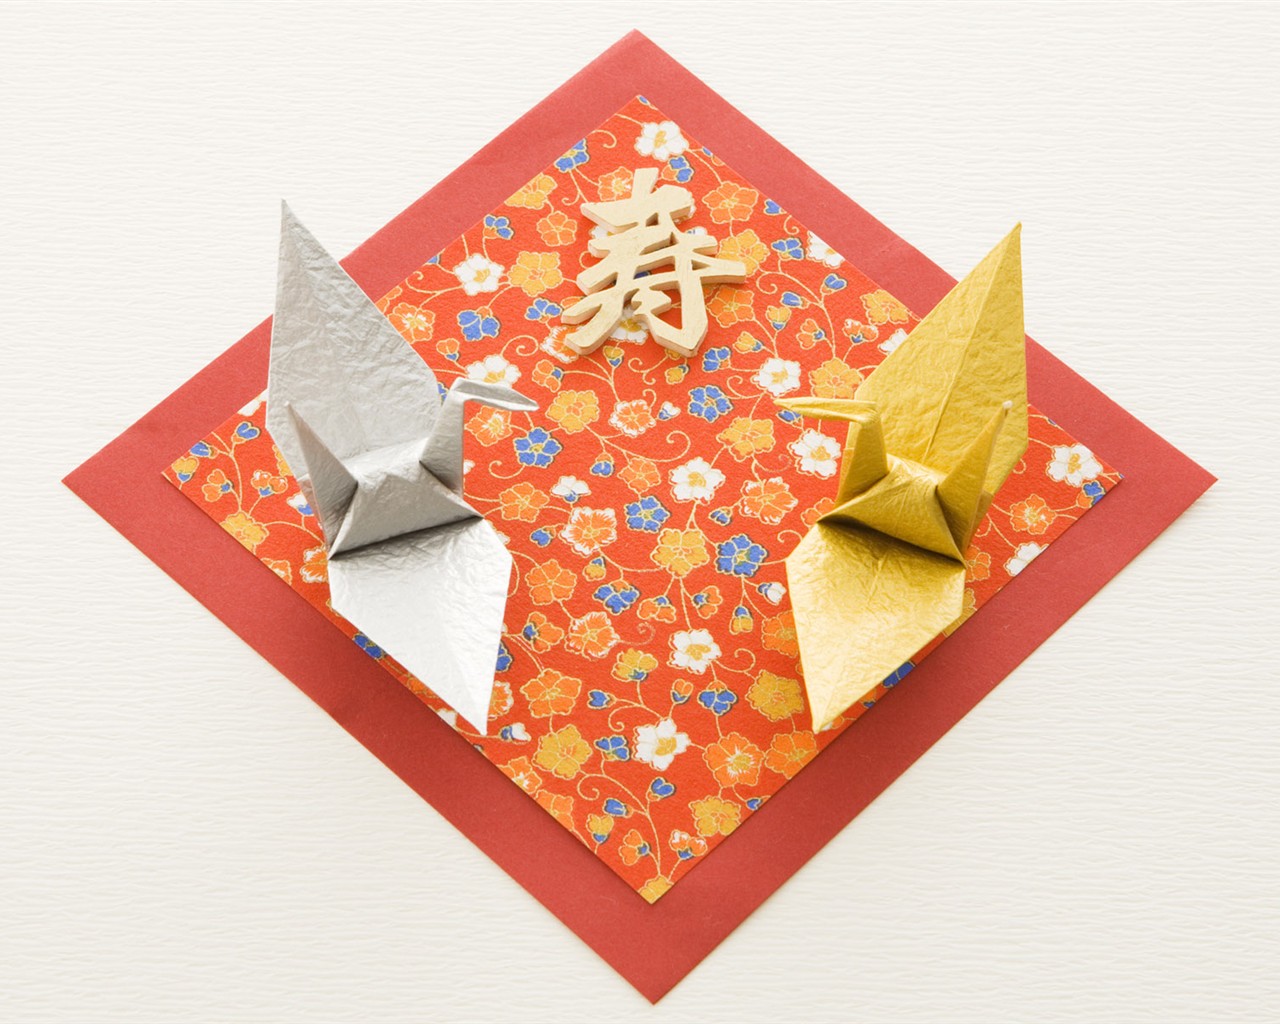 Fondos de año nuevo japonés Cultura #31 - 1280x1024